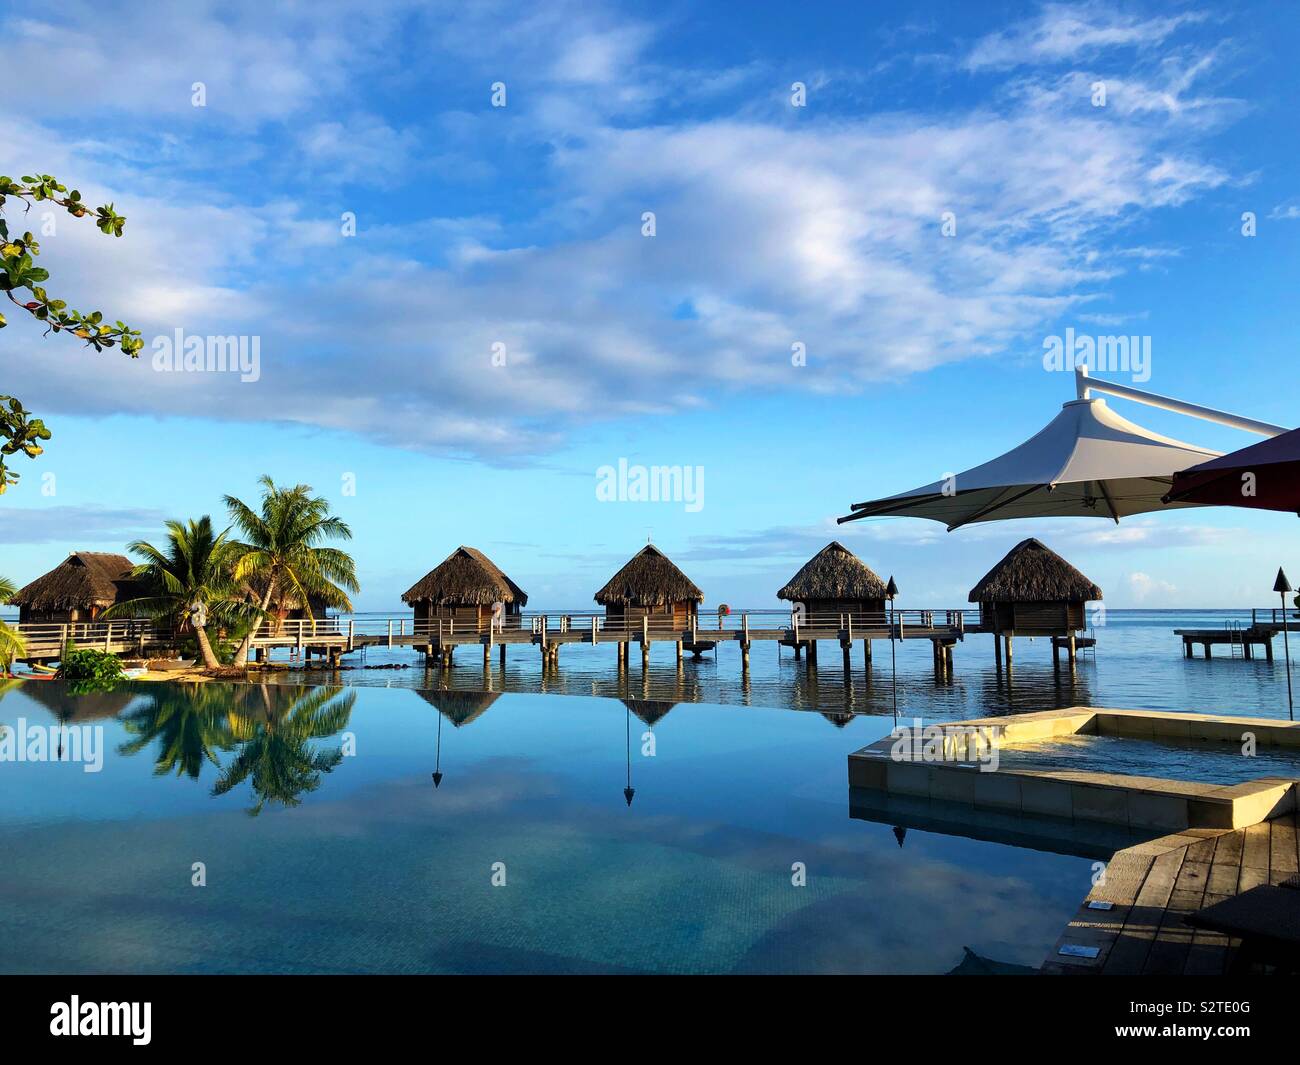 Piscine à débordement, spa, et bungalows sur pilotis dans un hôtel à Moorea, Polynésie Française Banque D'Images